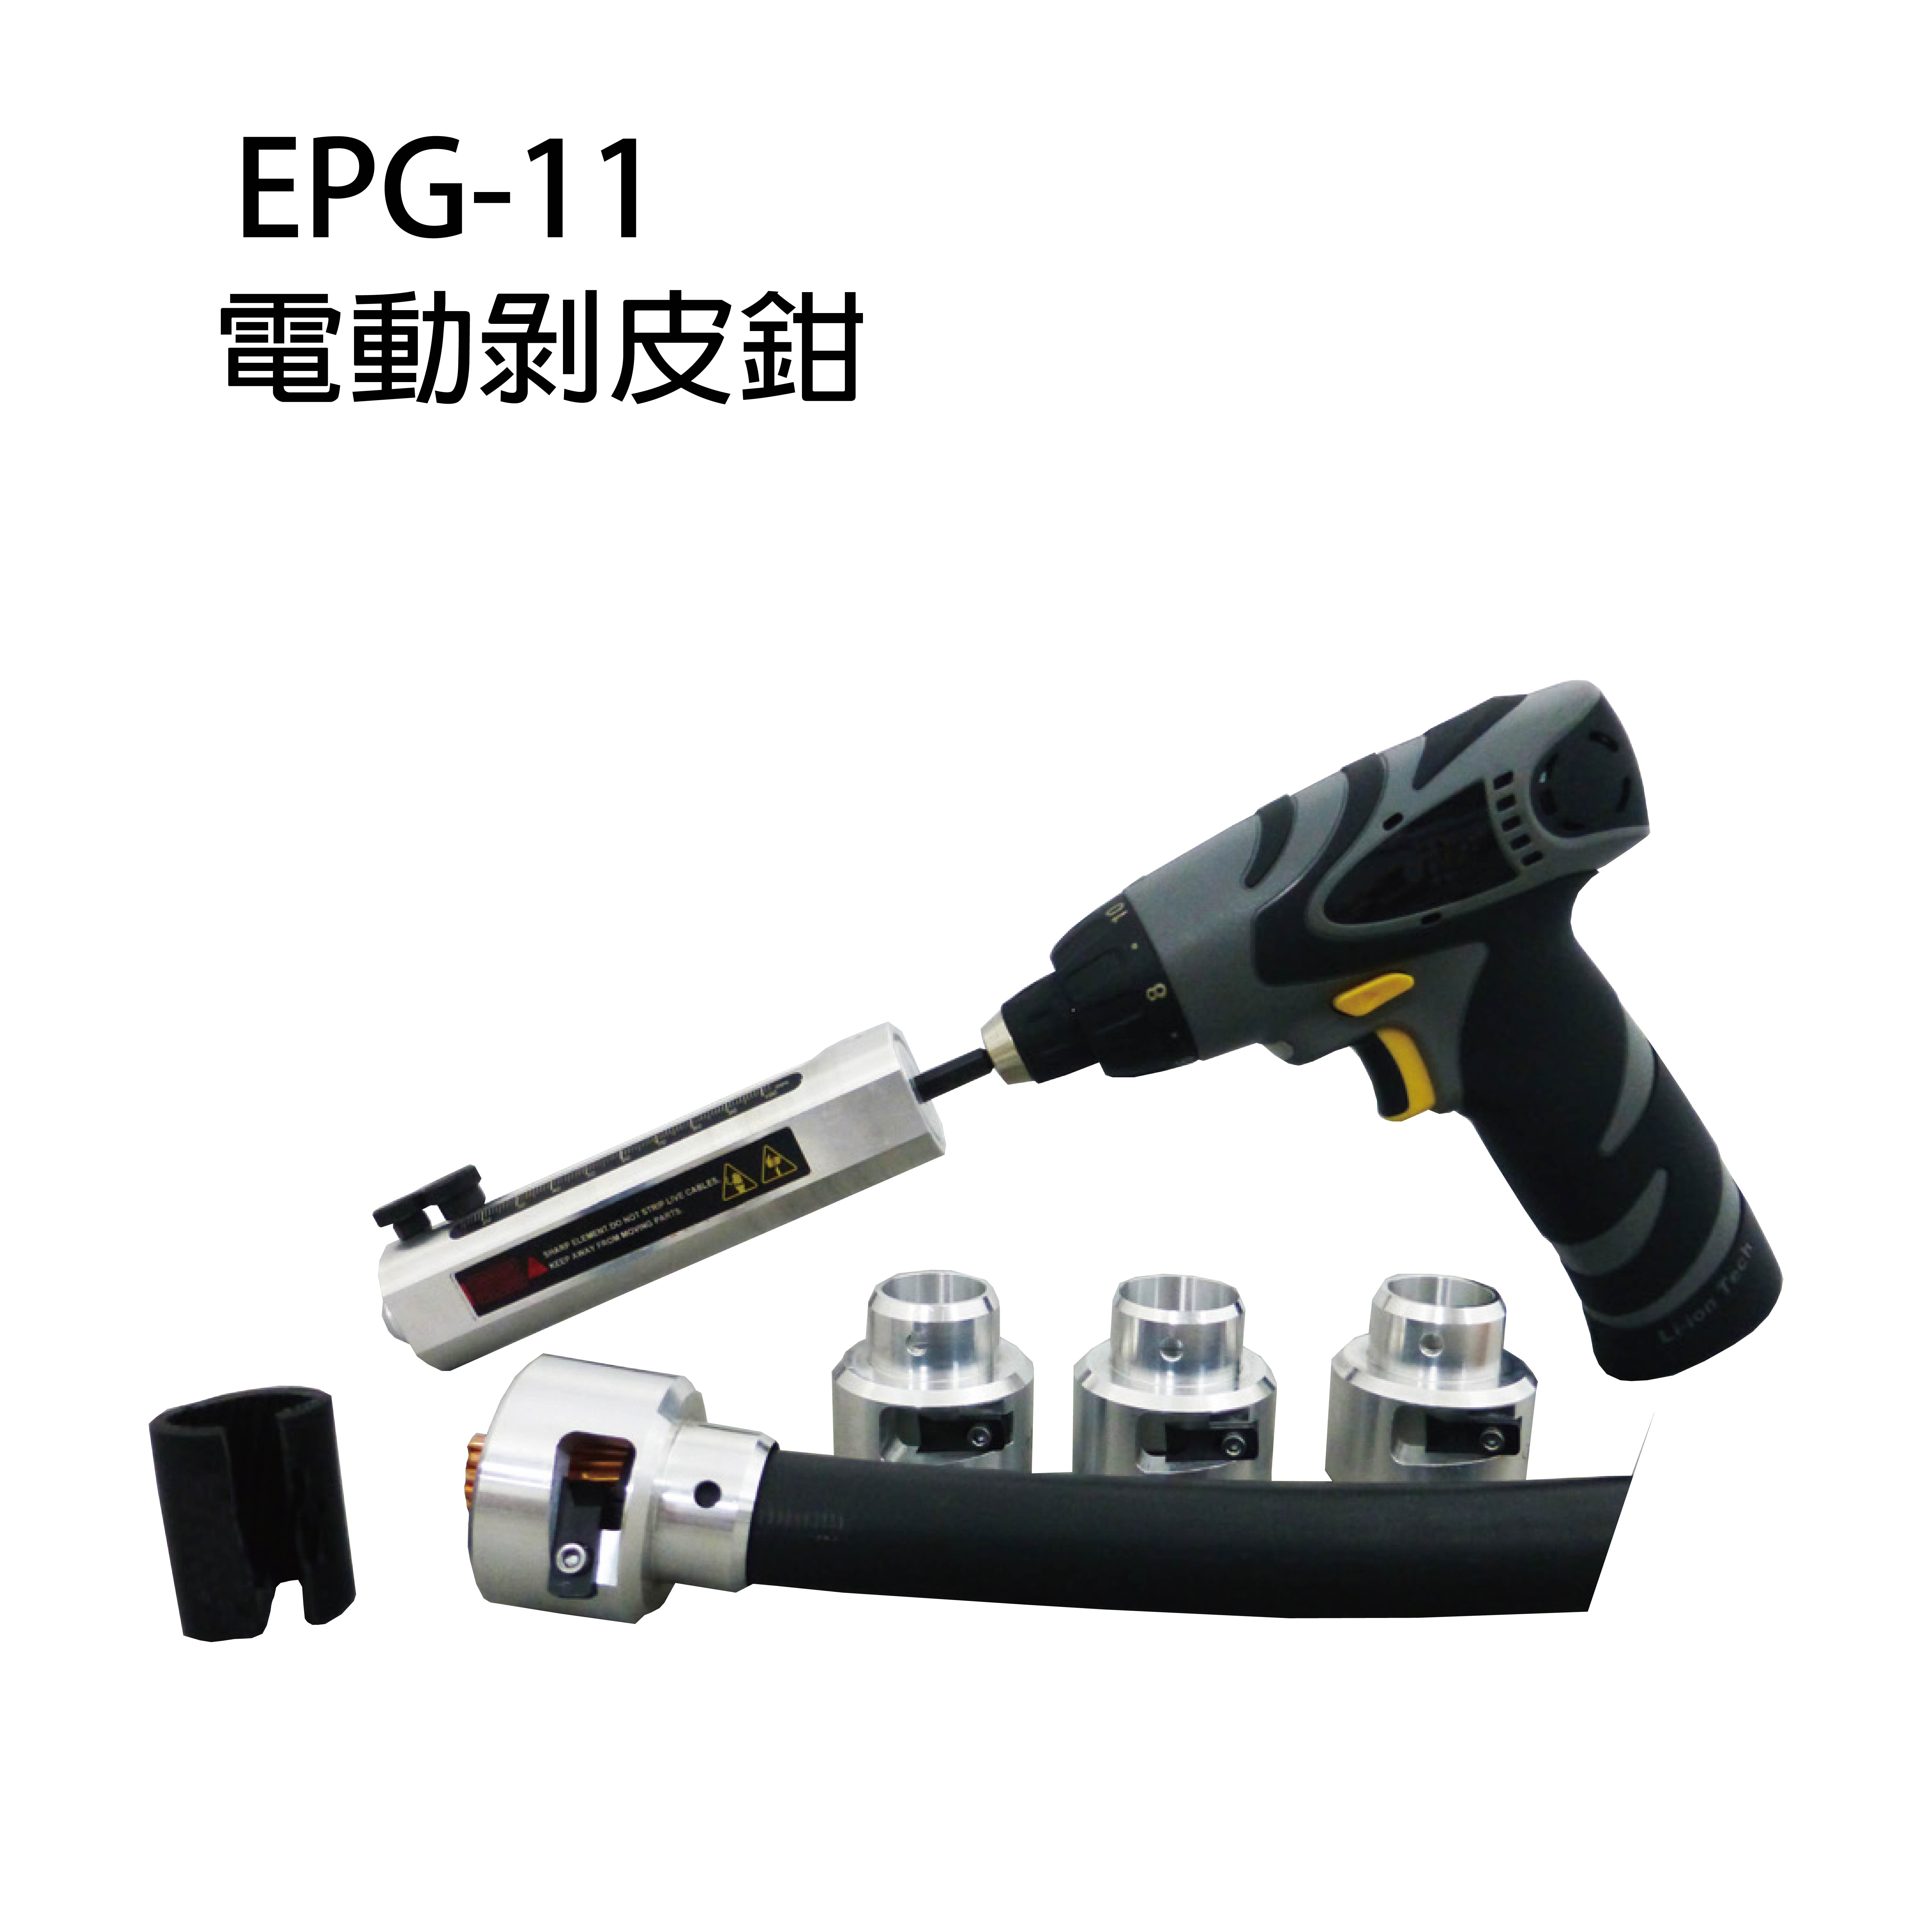 EPG-11, EPG-11S, EPG-11B CORDLESS-DRILL-DRIVING CABLE STRIPPERS